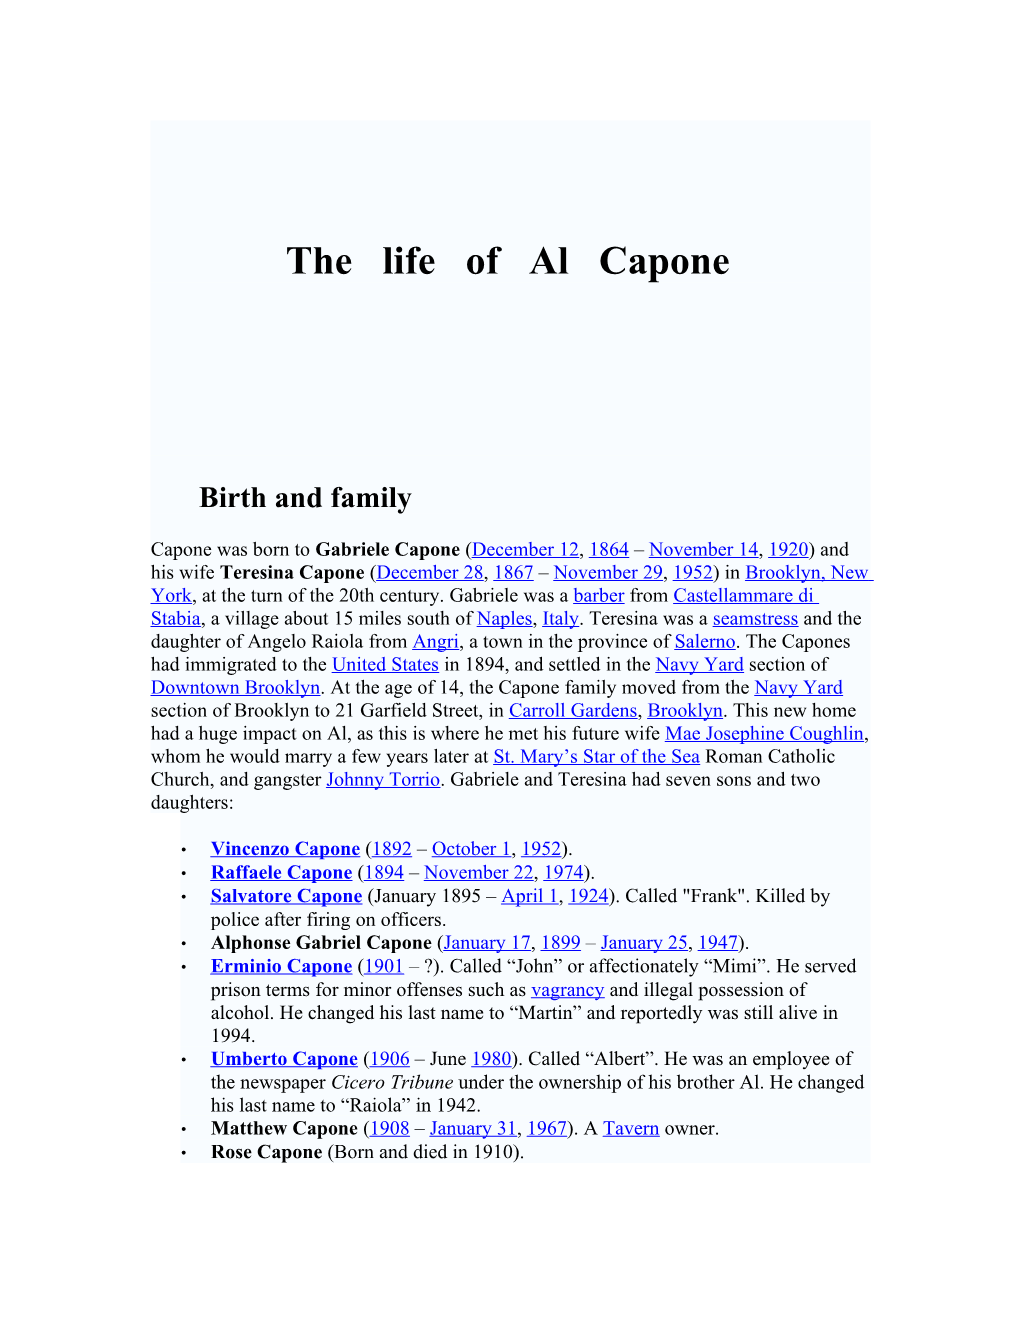 The Life of Al Capone